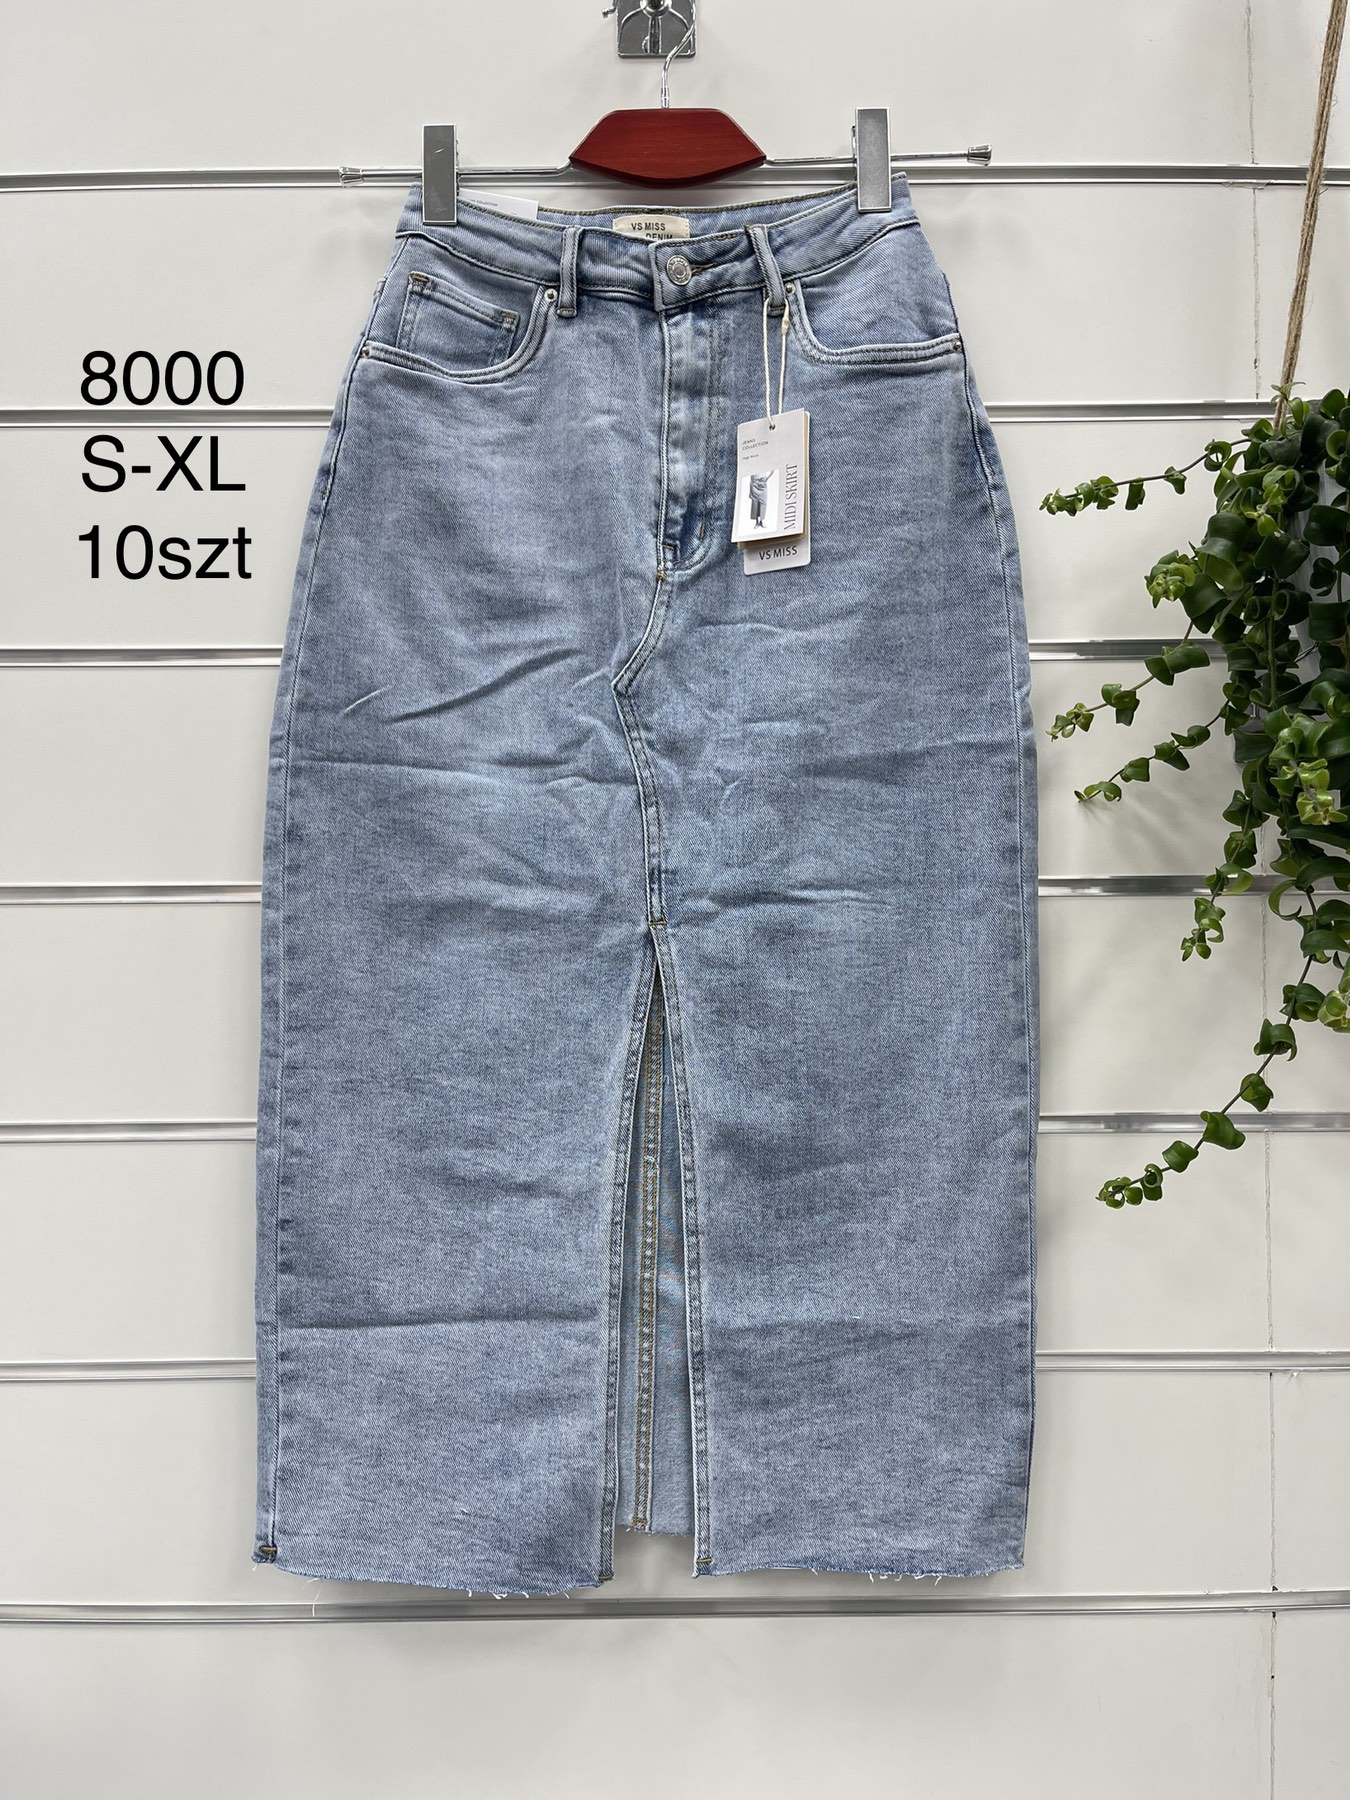 Spódnica   damskie jeans Roz S-XL.  1 kolor . Paczka 12szt